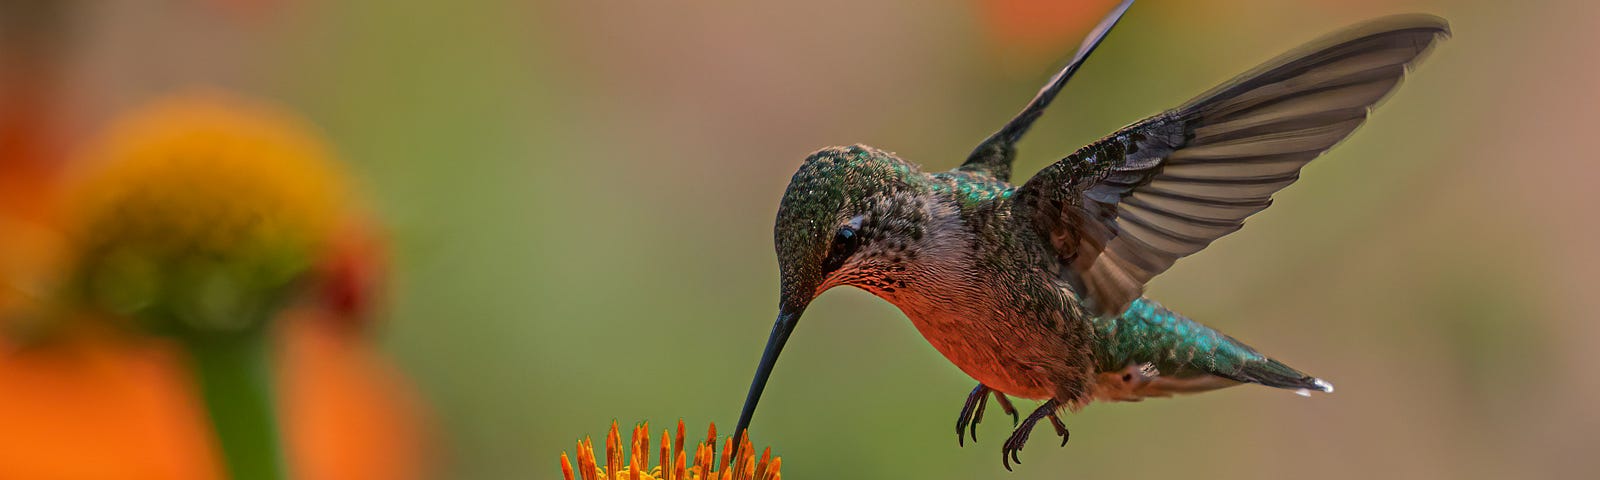 Hummingbird feeding off a flower